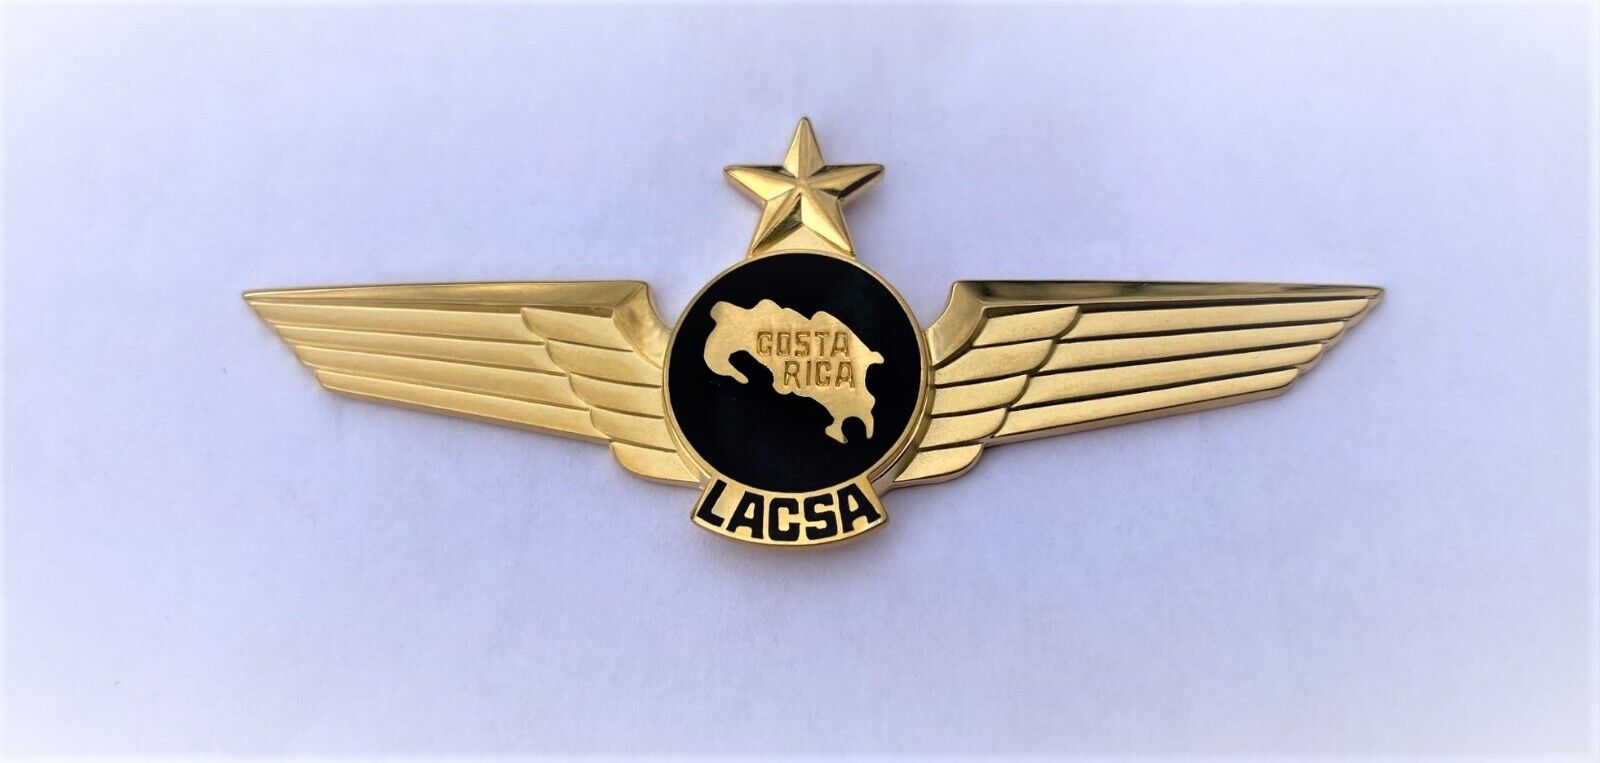 LACSA Costa Rica - Captain Wing